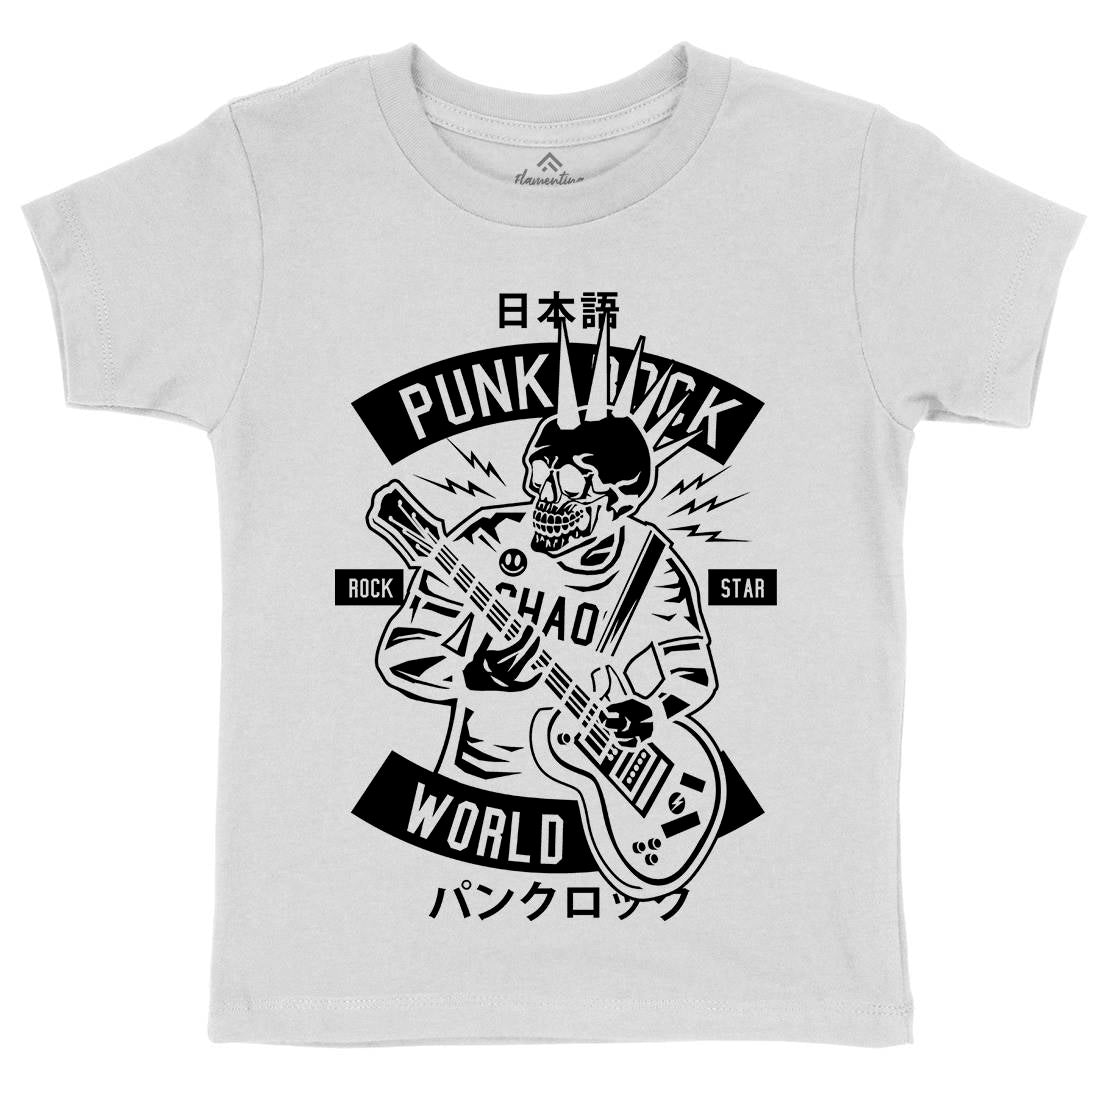 Punk Rock Show Kids Crew Neck T-Shirt Music B606